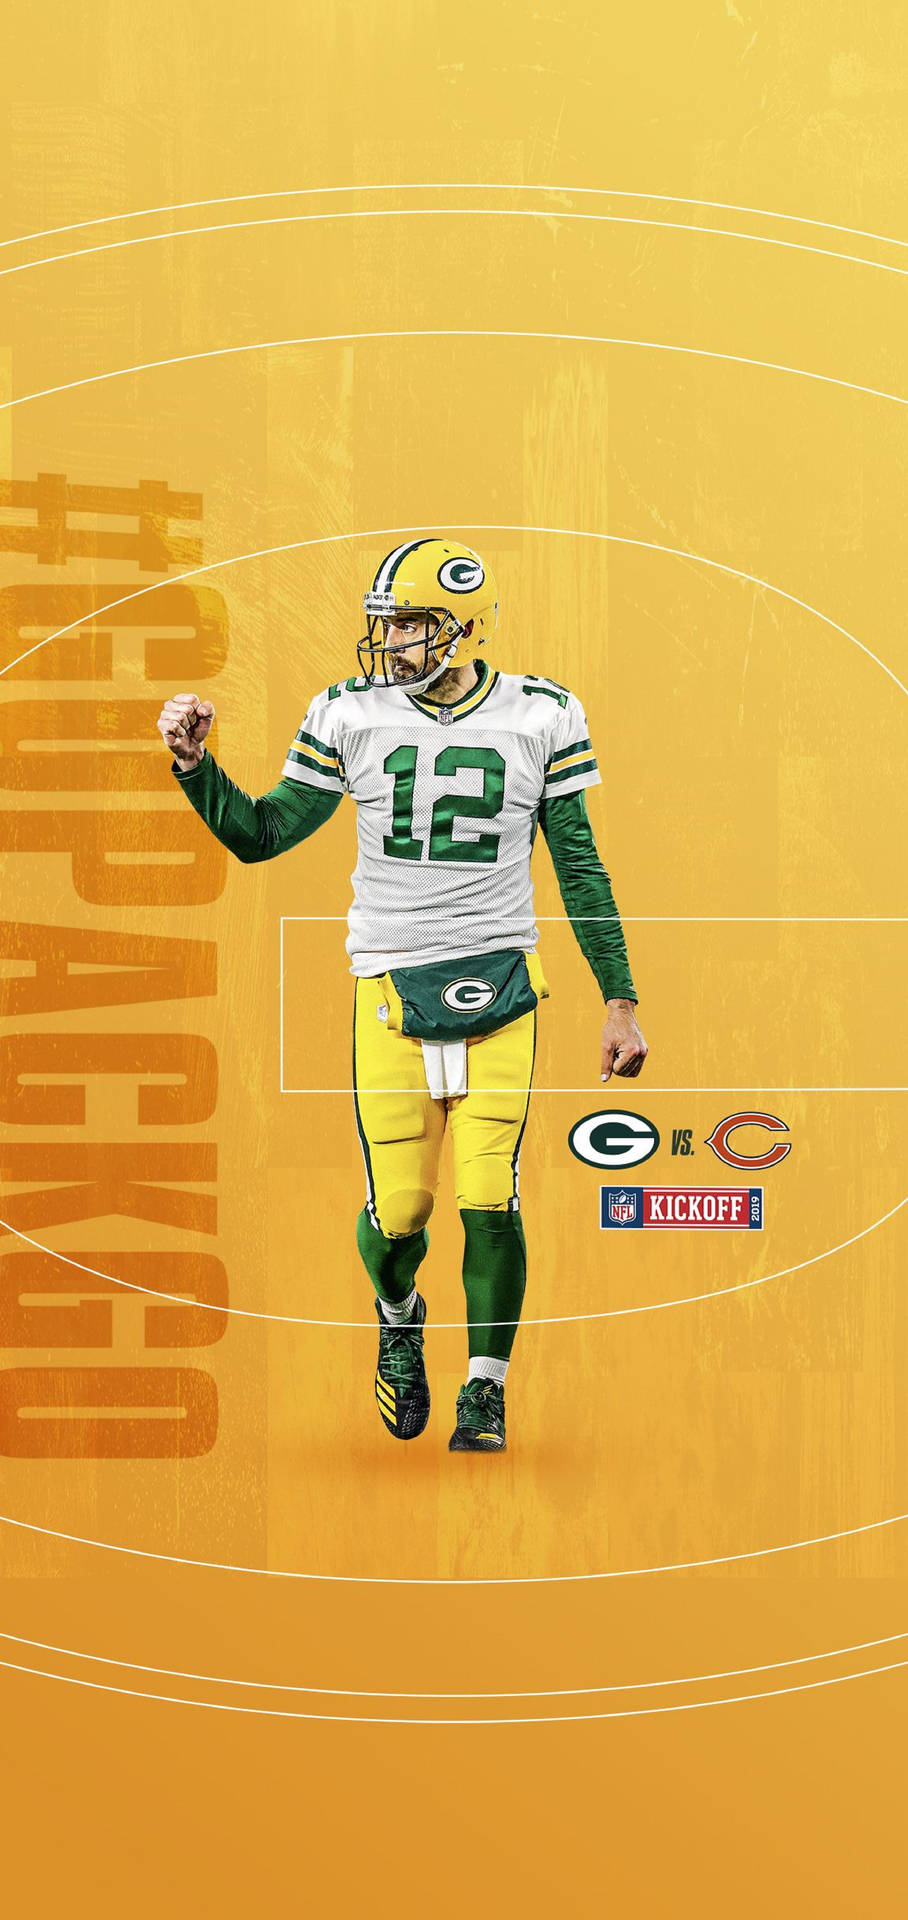 Aaron Rodgers NFL 2019 Poster Wallpaper